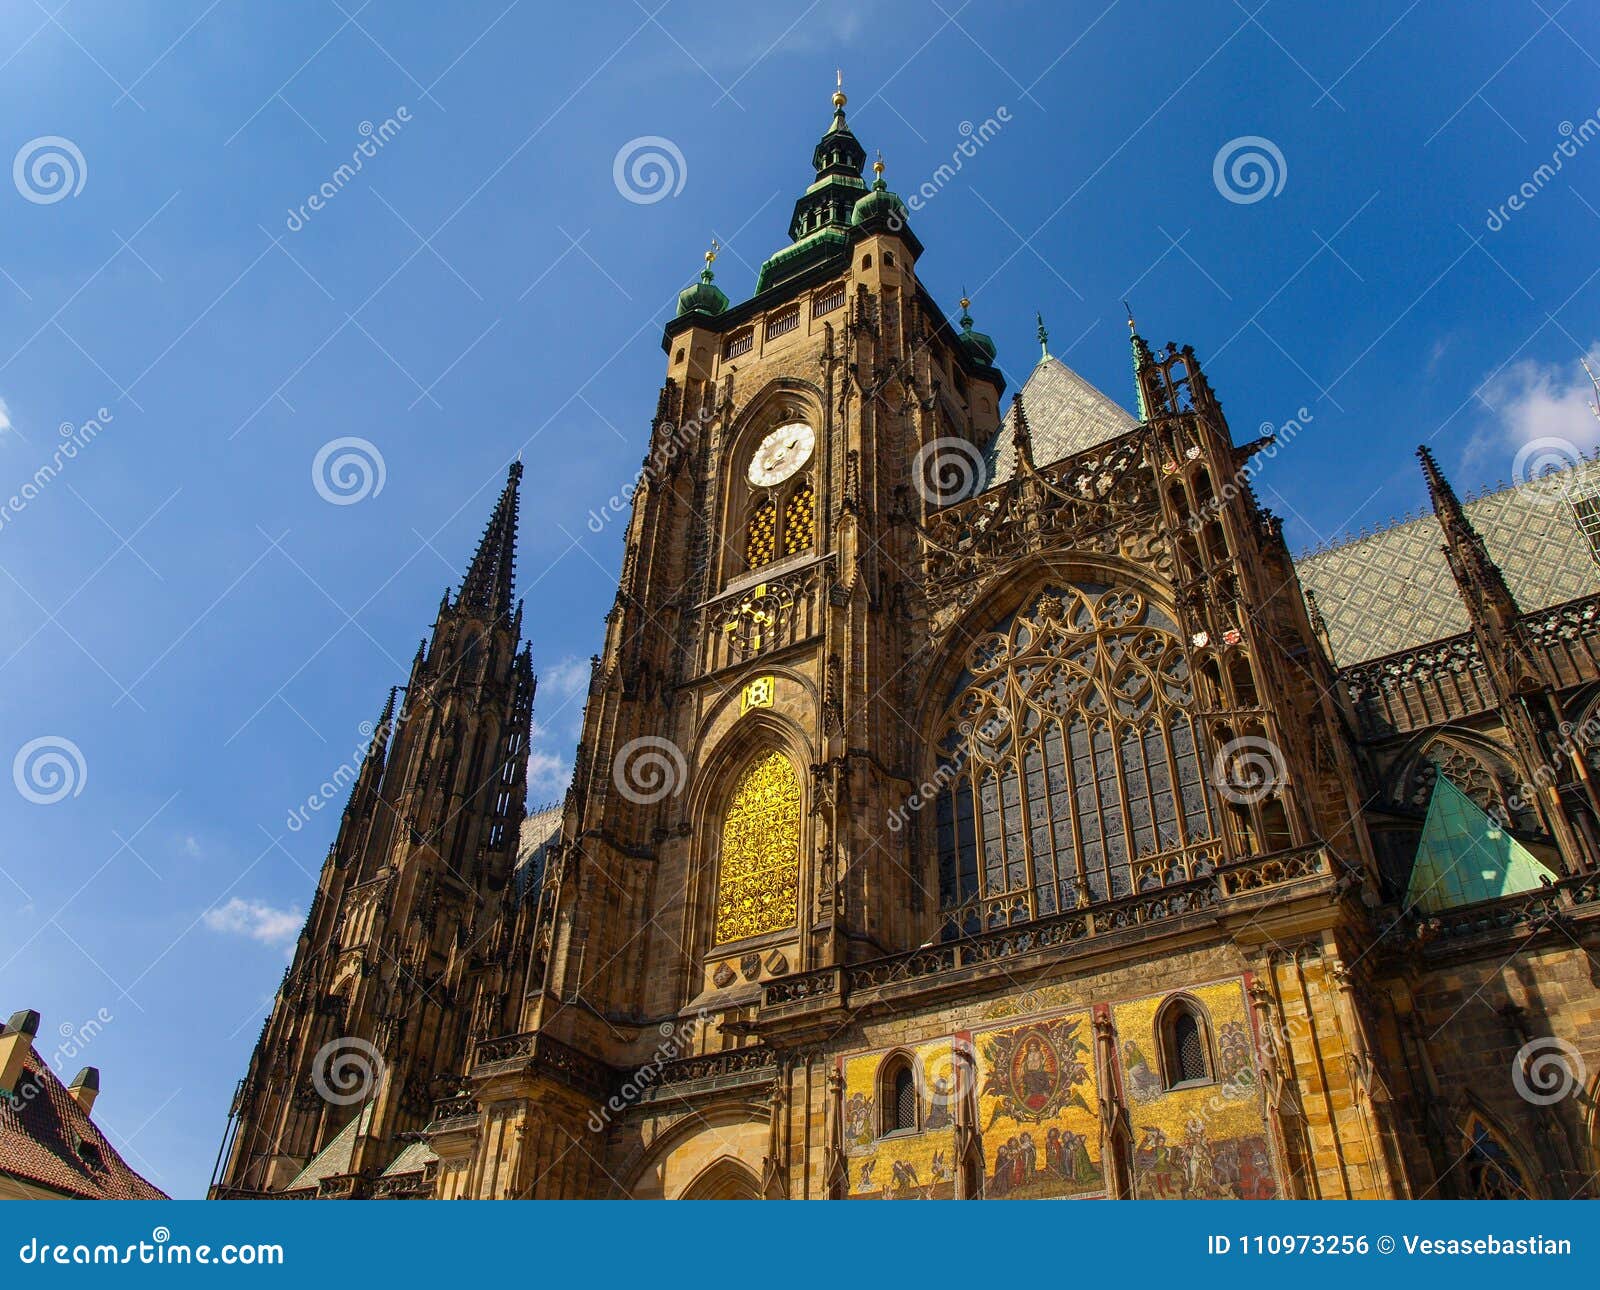 2023提恩教堂游玩攻略,提恩教堂是布拉格旧城广场上...【去哪儿攻略】